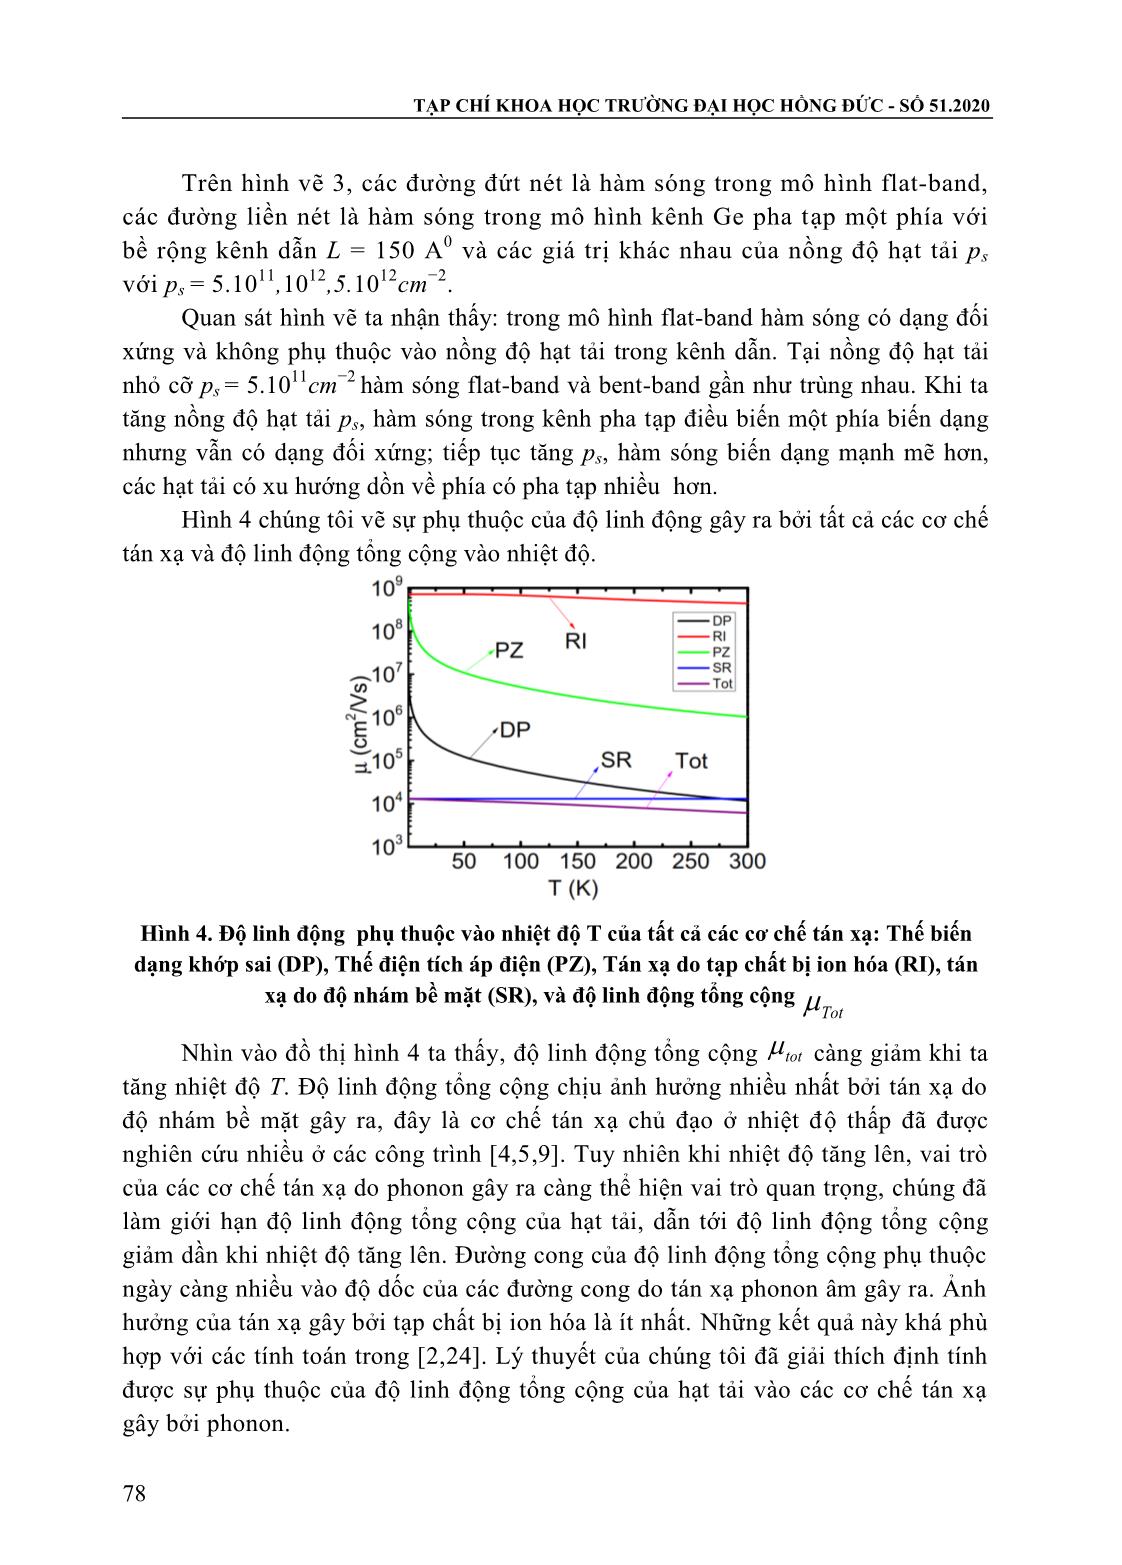 Nghiên cứu độ linh động của hạt tải trong kênh dẫn ge pha tạp điều biến phụ thuộc vào nhiệt độ trang 7